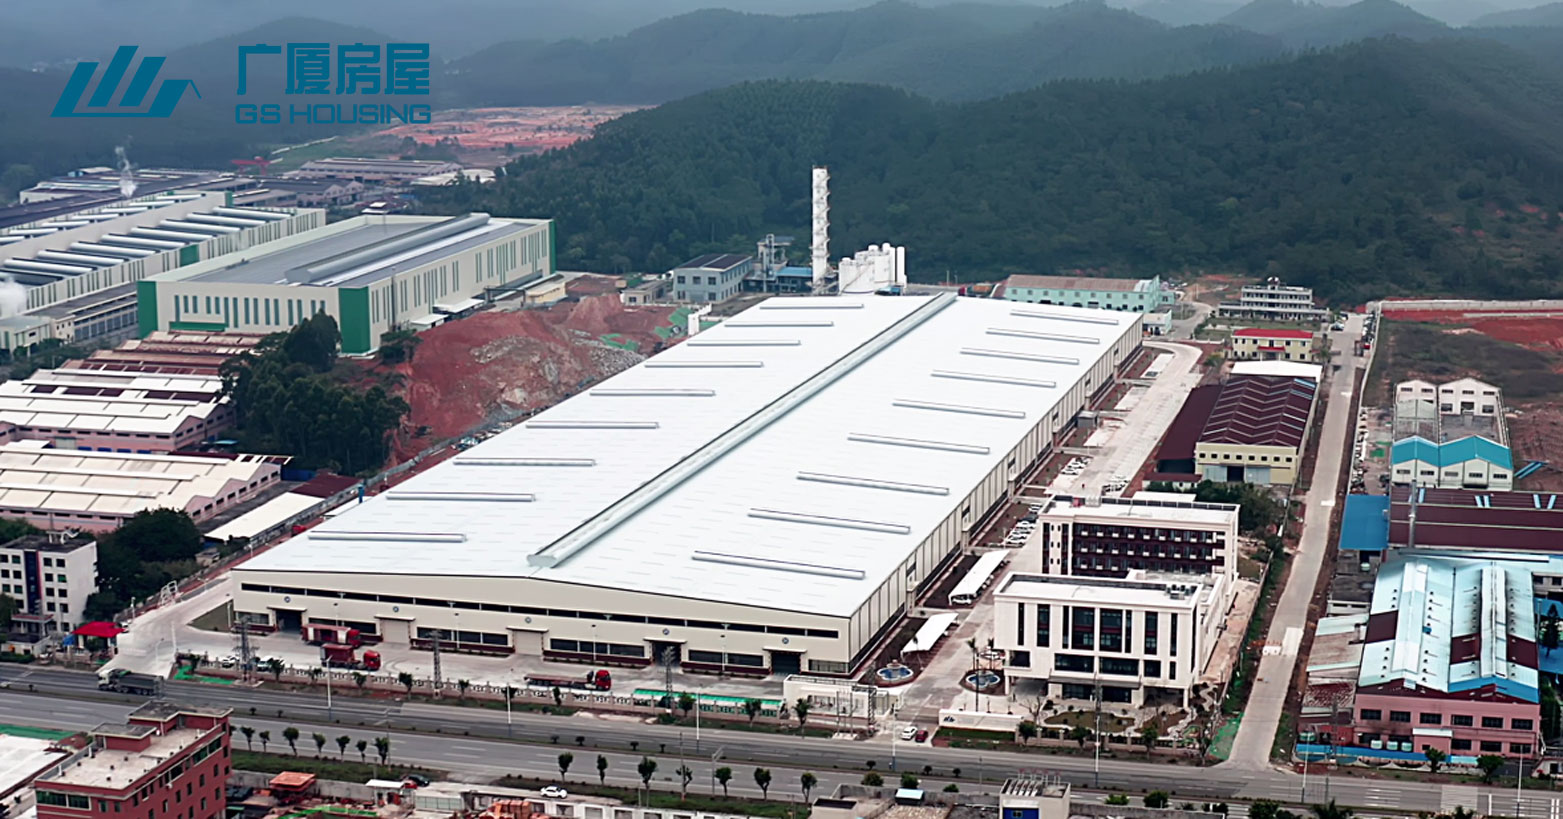 GS Housing - Guangdong produksjonsbase sør i Kina (mer enn 100 sett containerhus kan ferdigstilles på en dag)